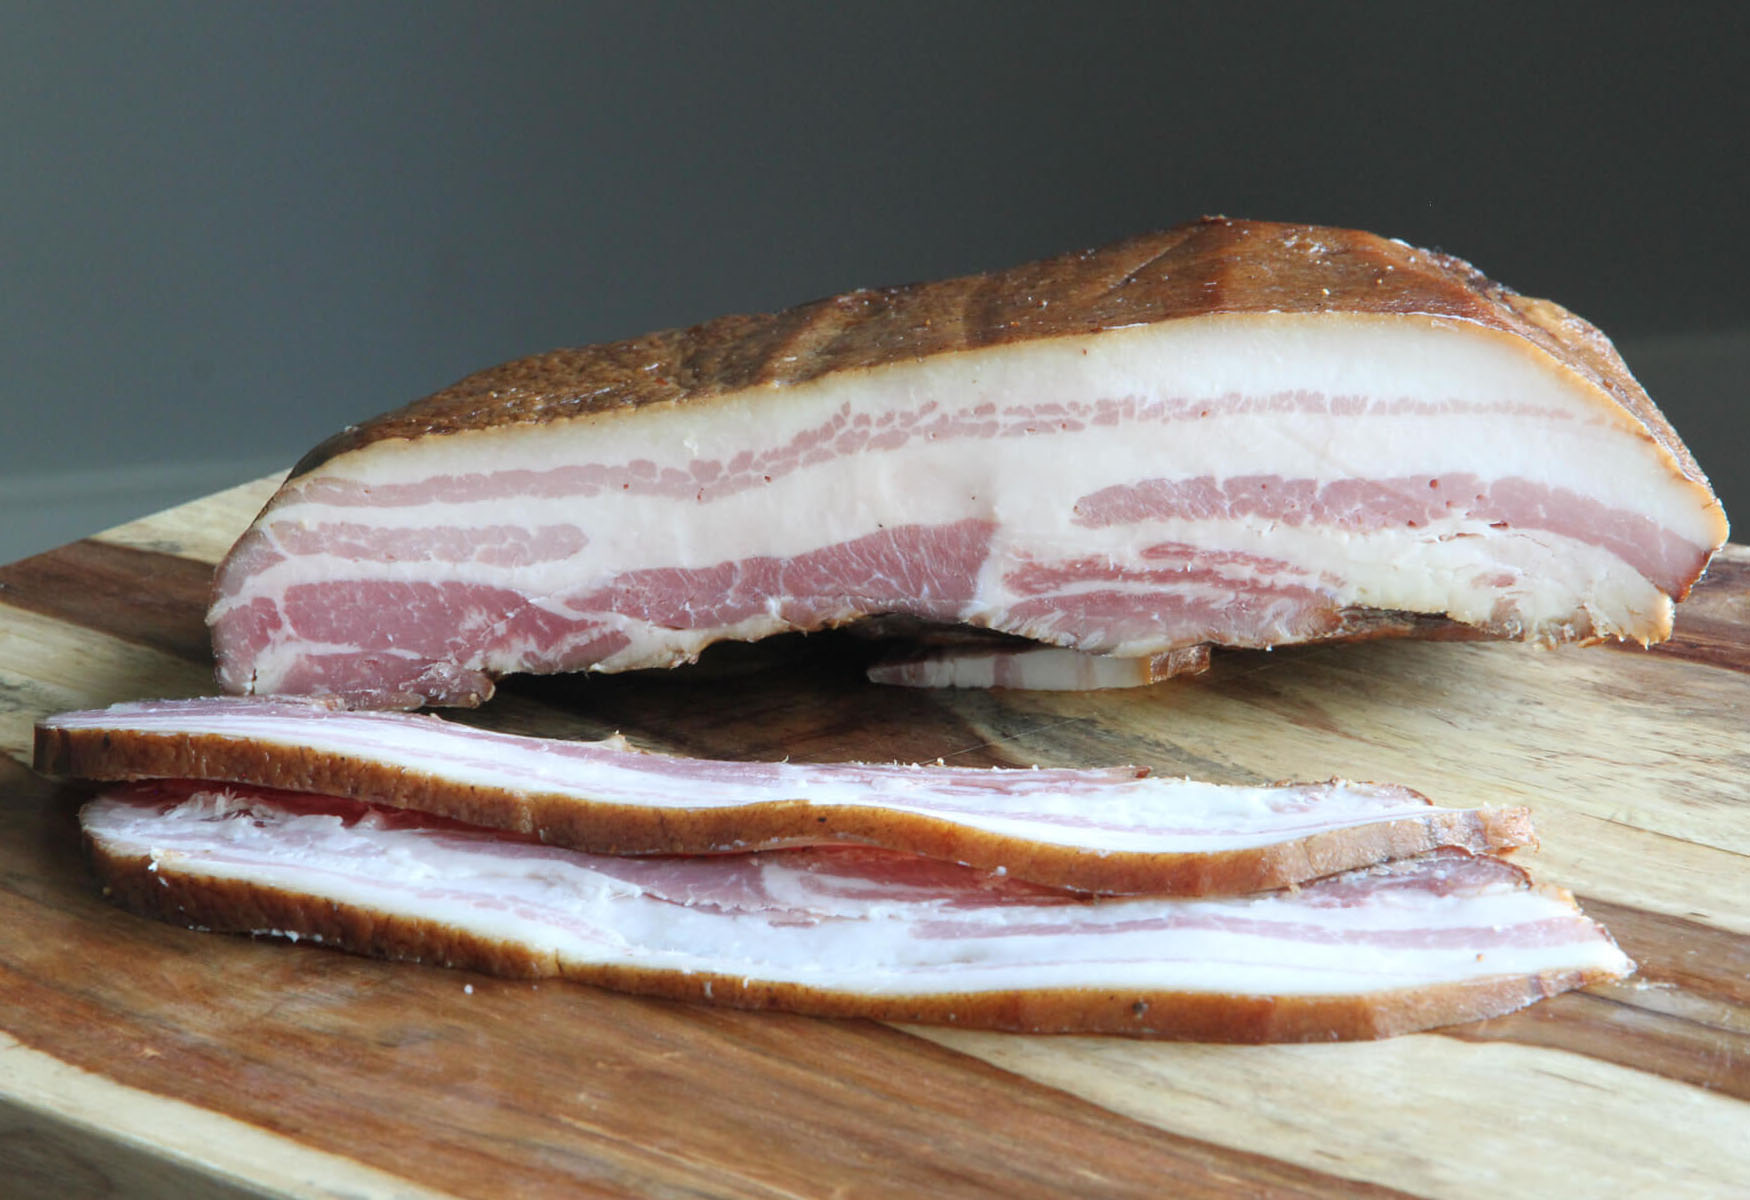 10-pork-bacon-nutrition-facts